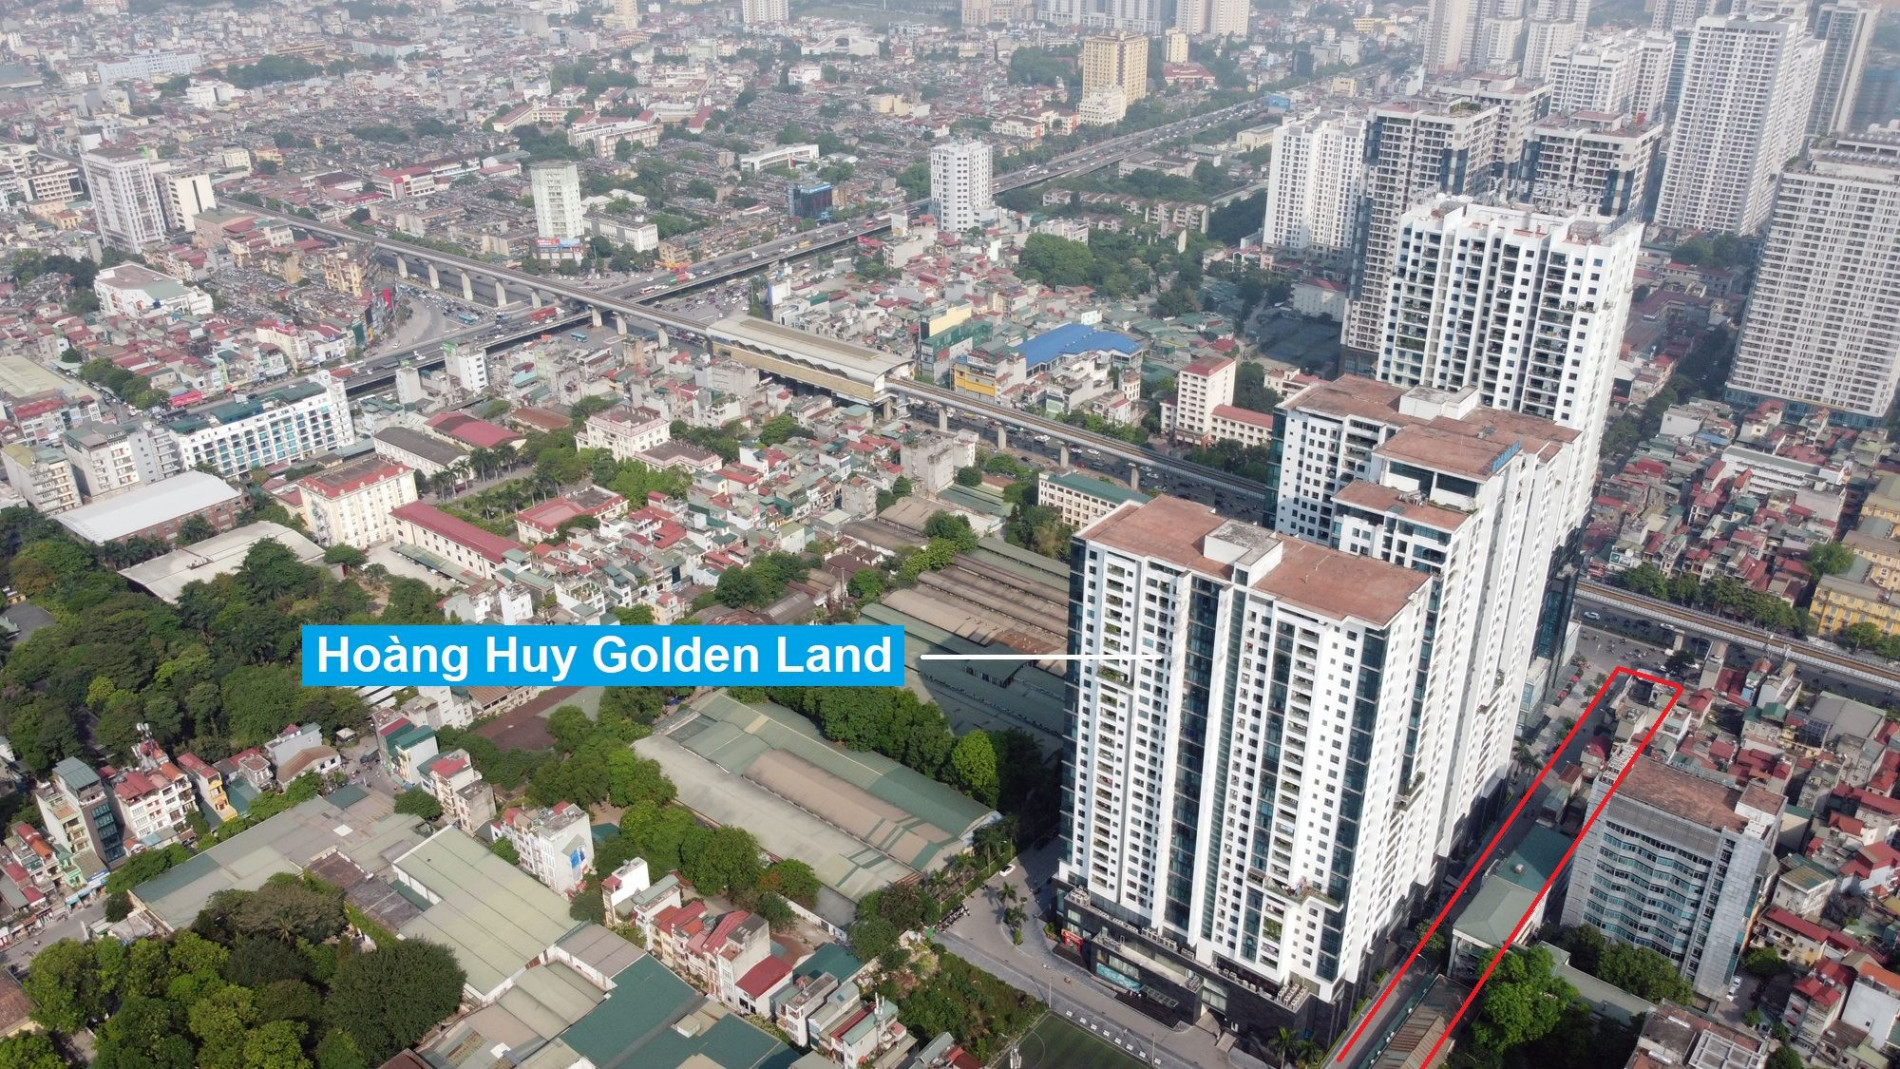 Đường sẽ mở theo quy hoạch ở phường Thanh Xuân Trung, Thanh Xuân, Hà Nội (phần 1)